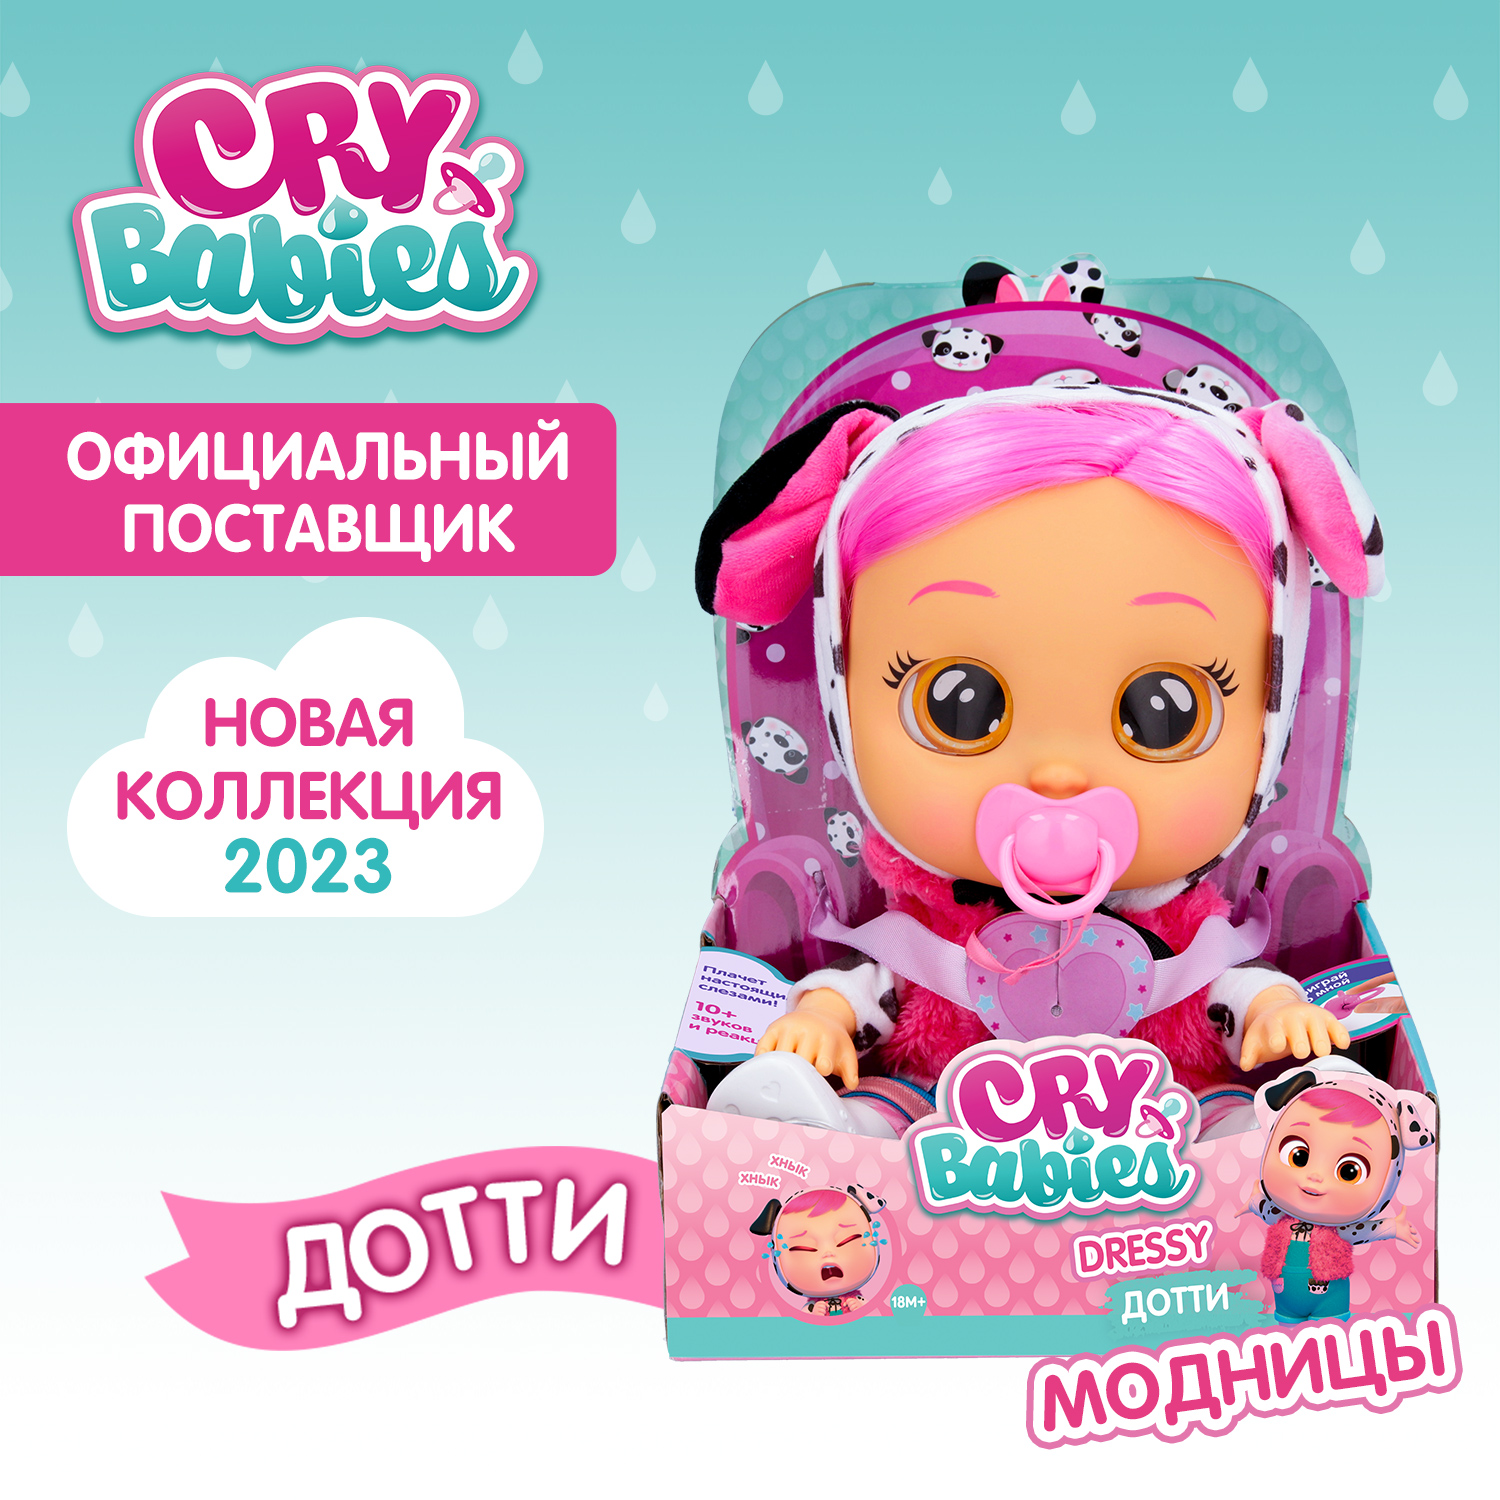 Кукла Cry Babies Дотти Модница, интерактивная, плачущая, 40884 кукла интерактивная весна анна модница 42 см